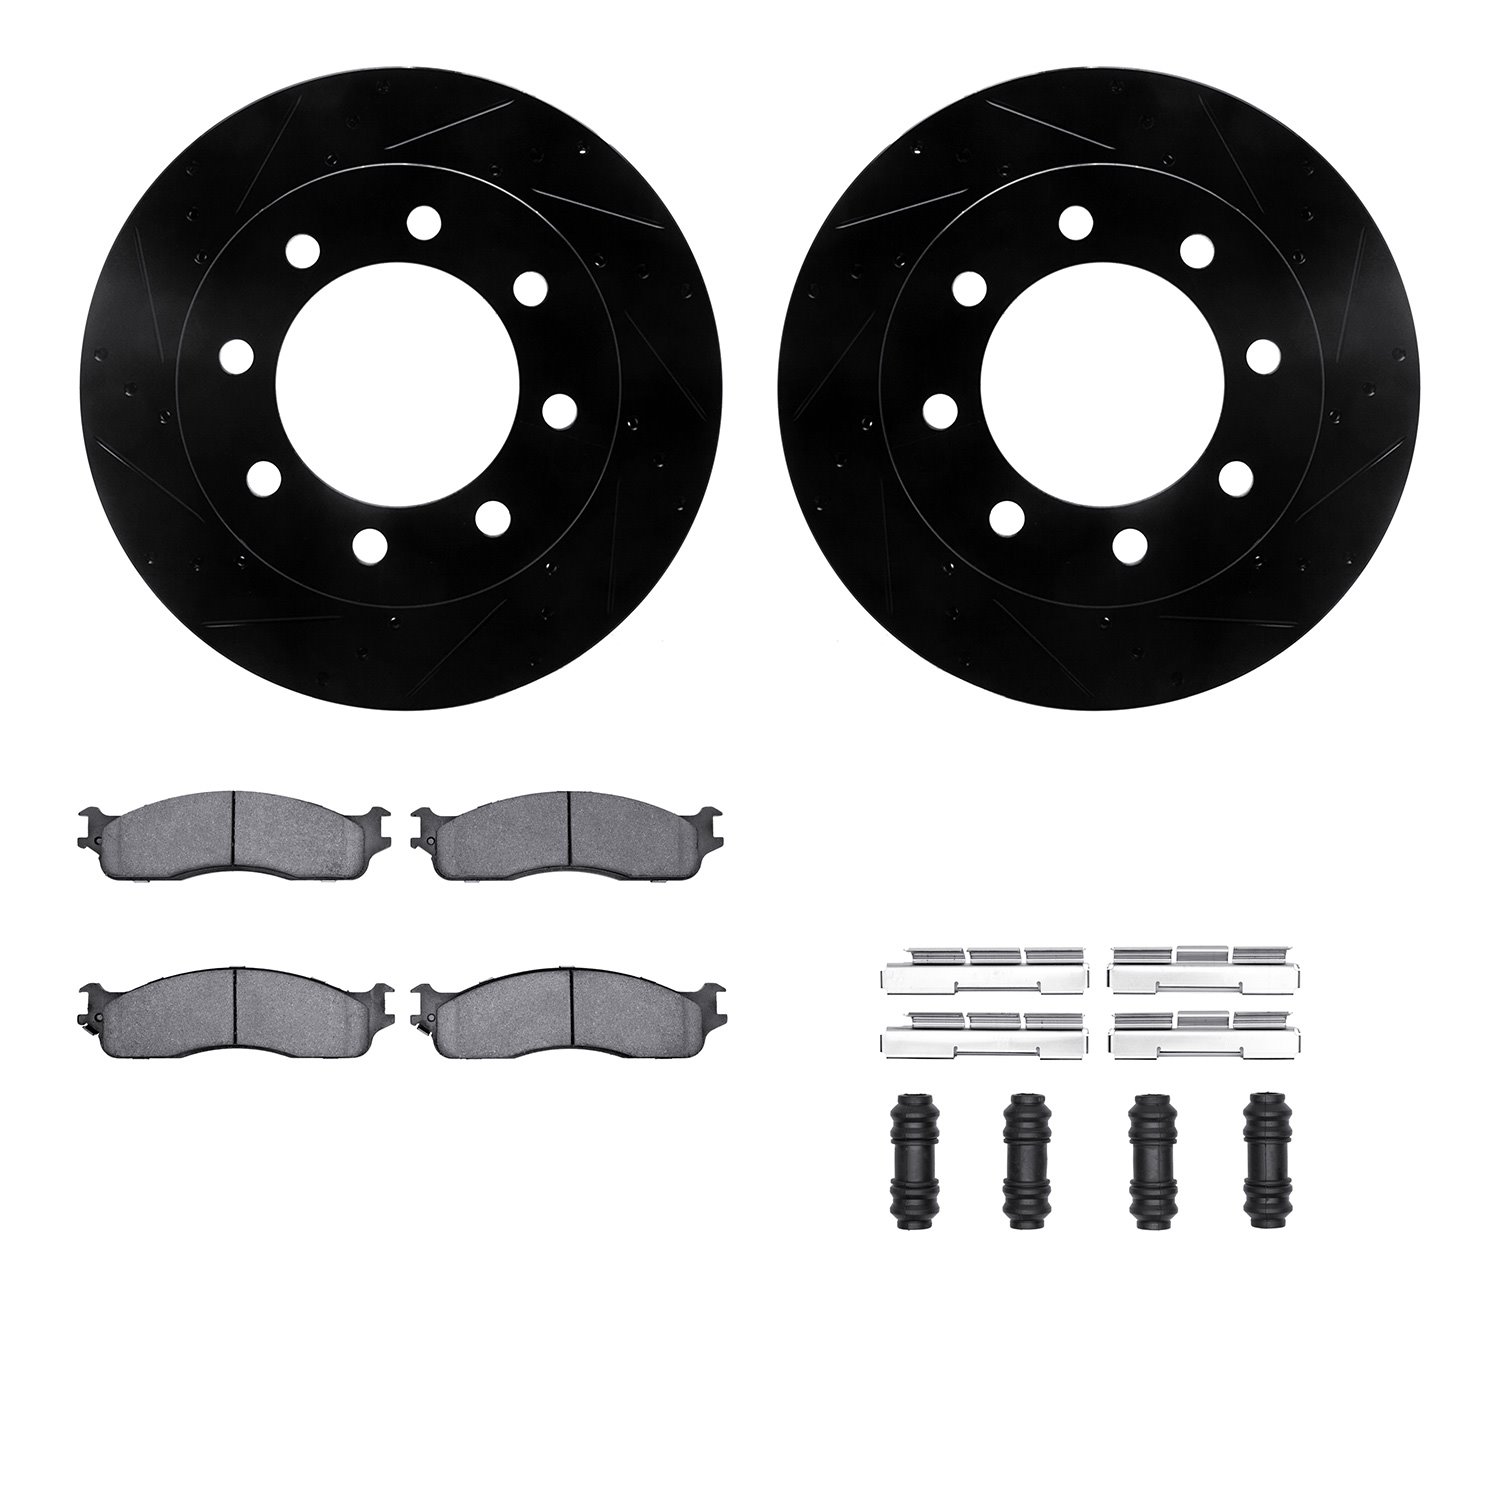 8512-40088 Drilled/Slotted Brake Rotors w/5000 Advanced Brake Pads Kit & Hardware [Black], 2003-2008 Mopar, Position: Front